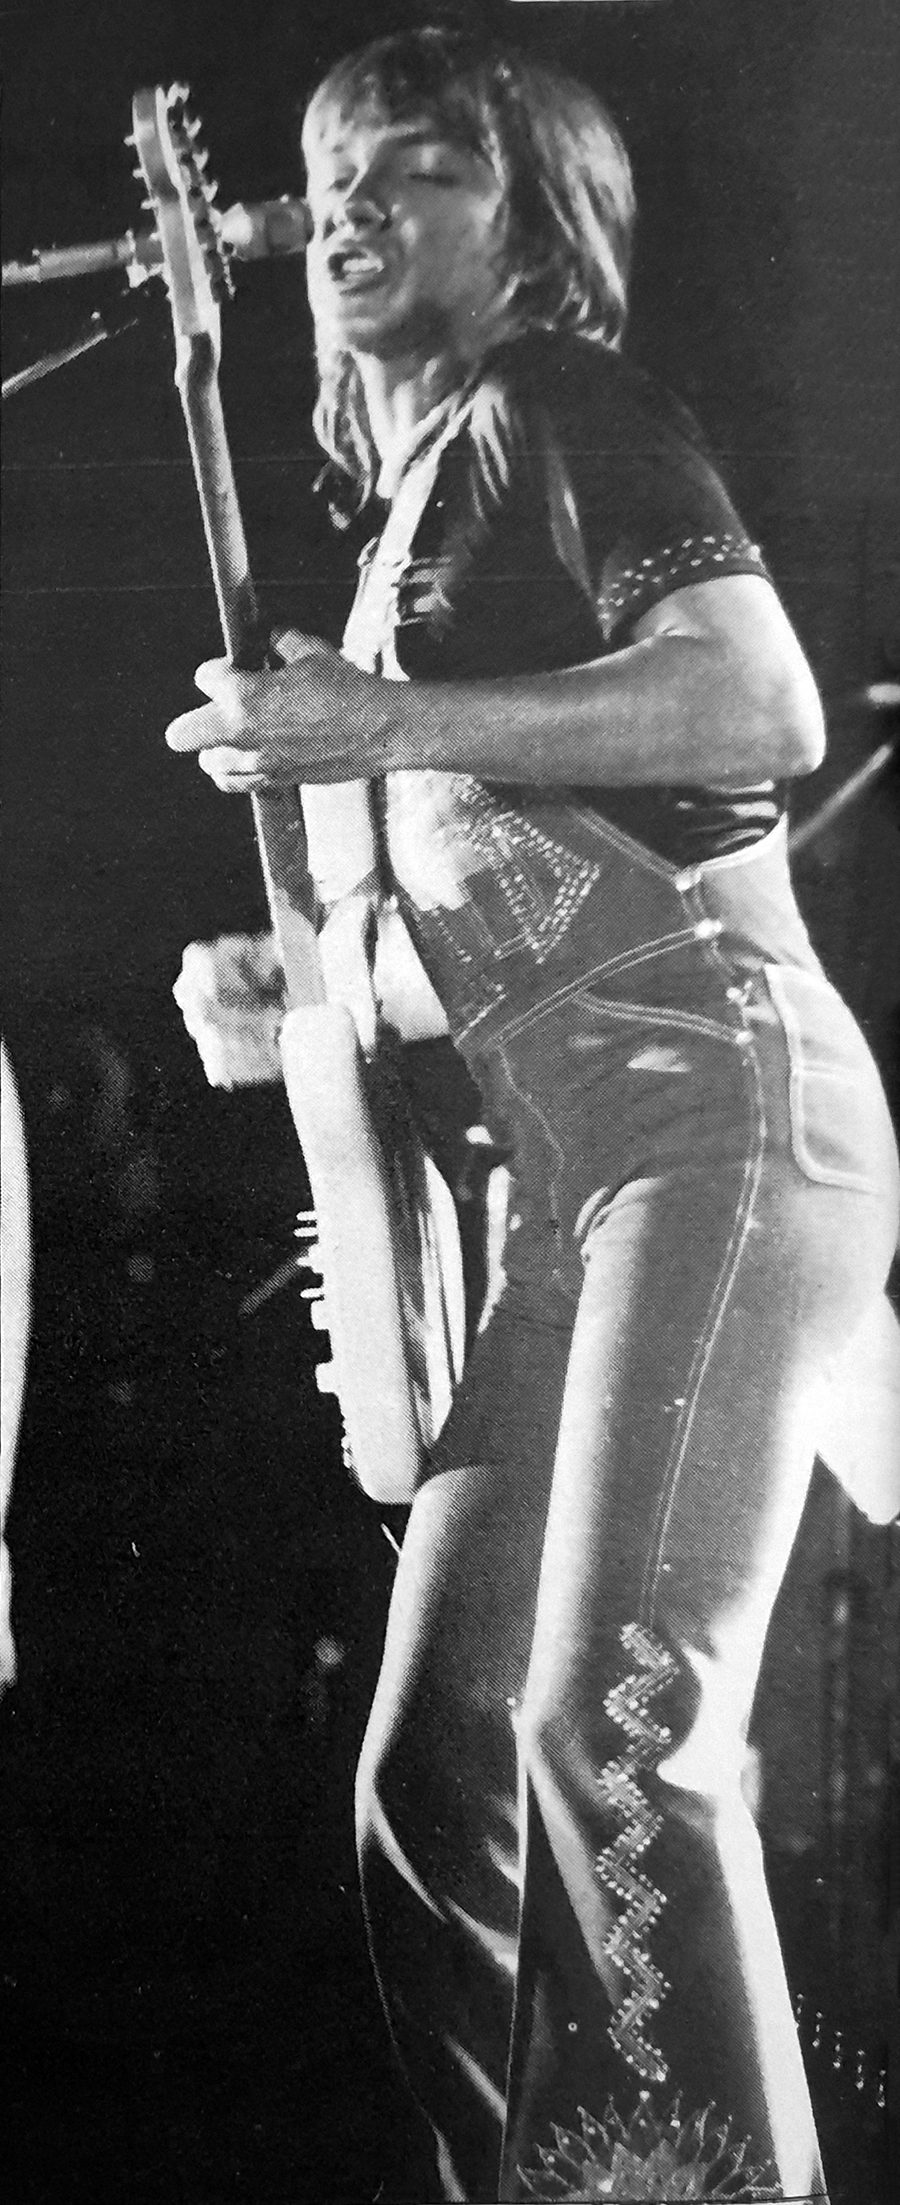 David Cassidy - May 9, 1974